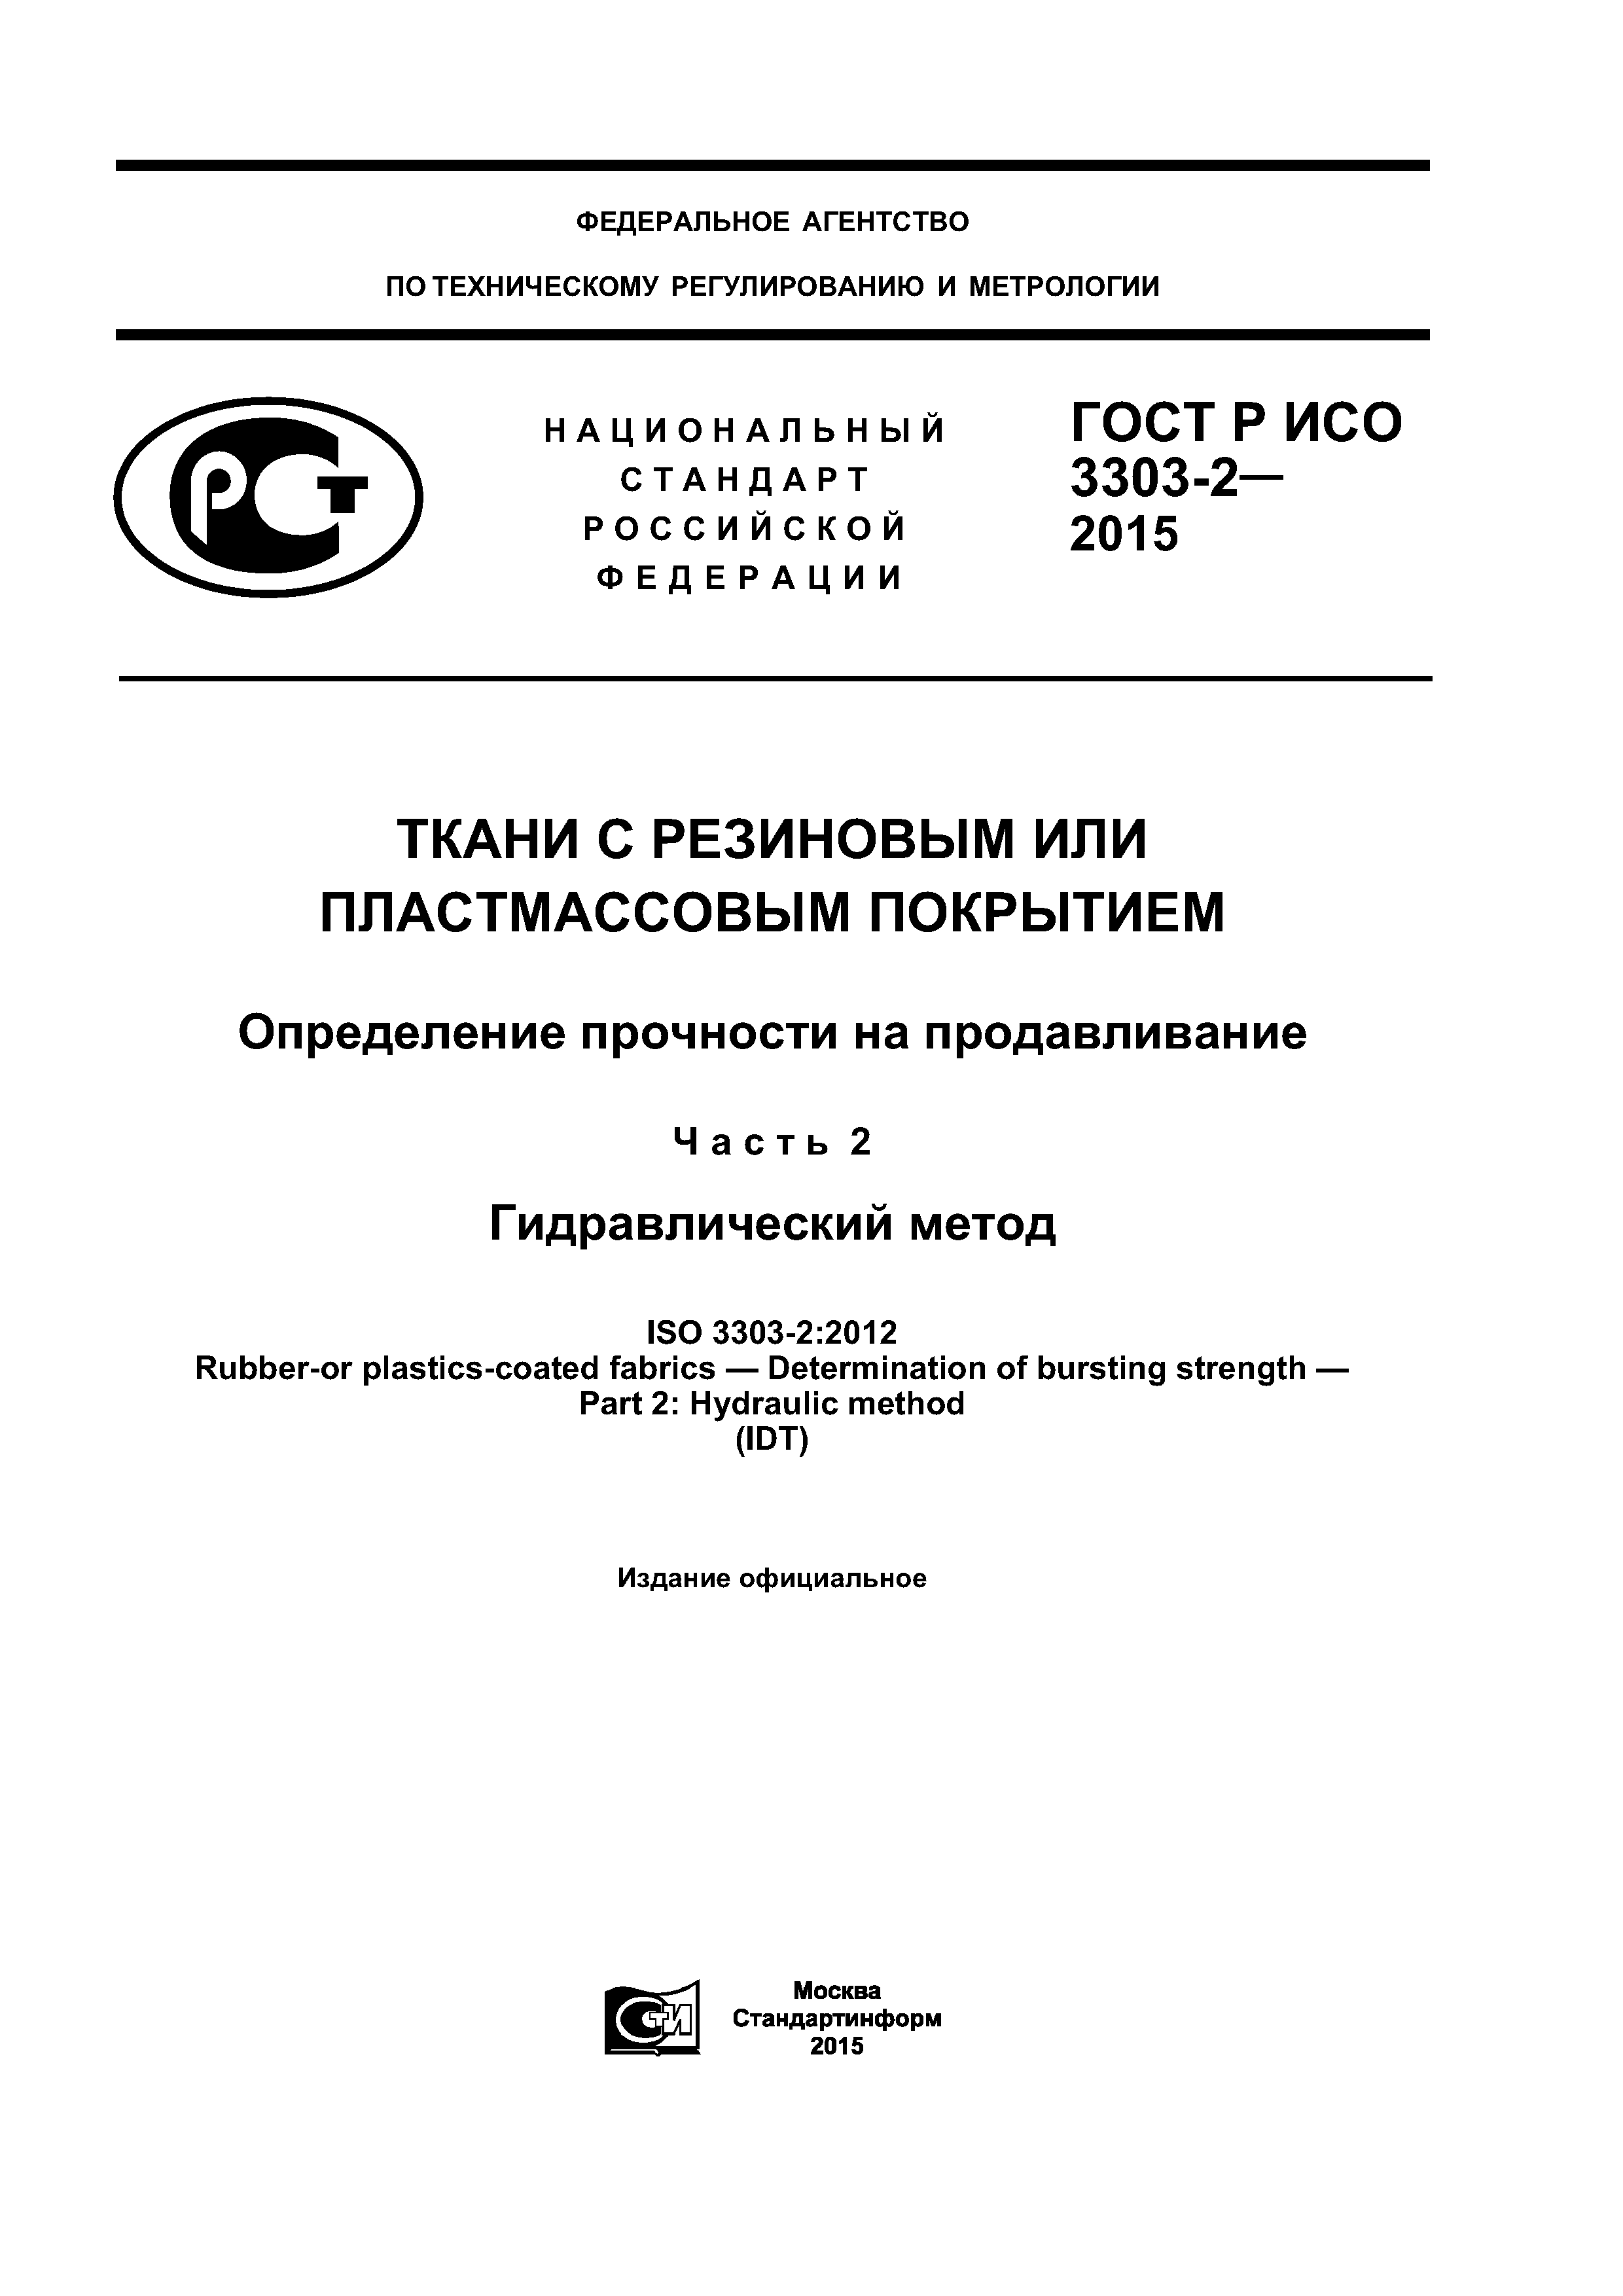 ГОСТ Р ИСО 3303-2-2015